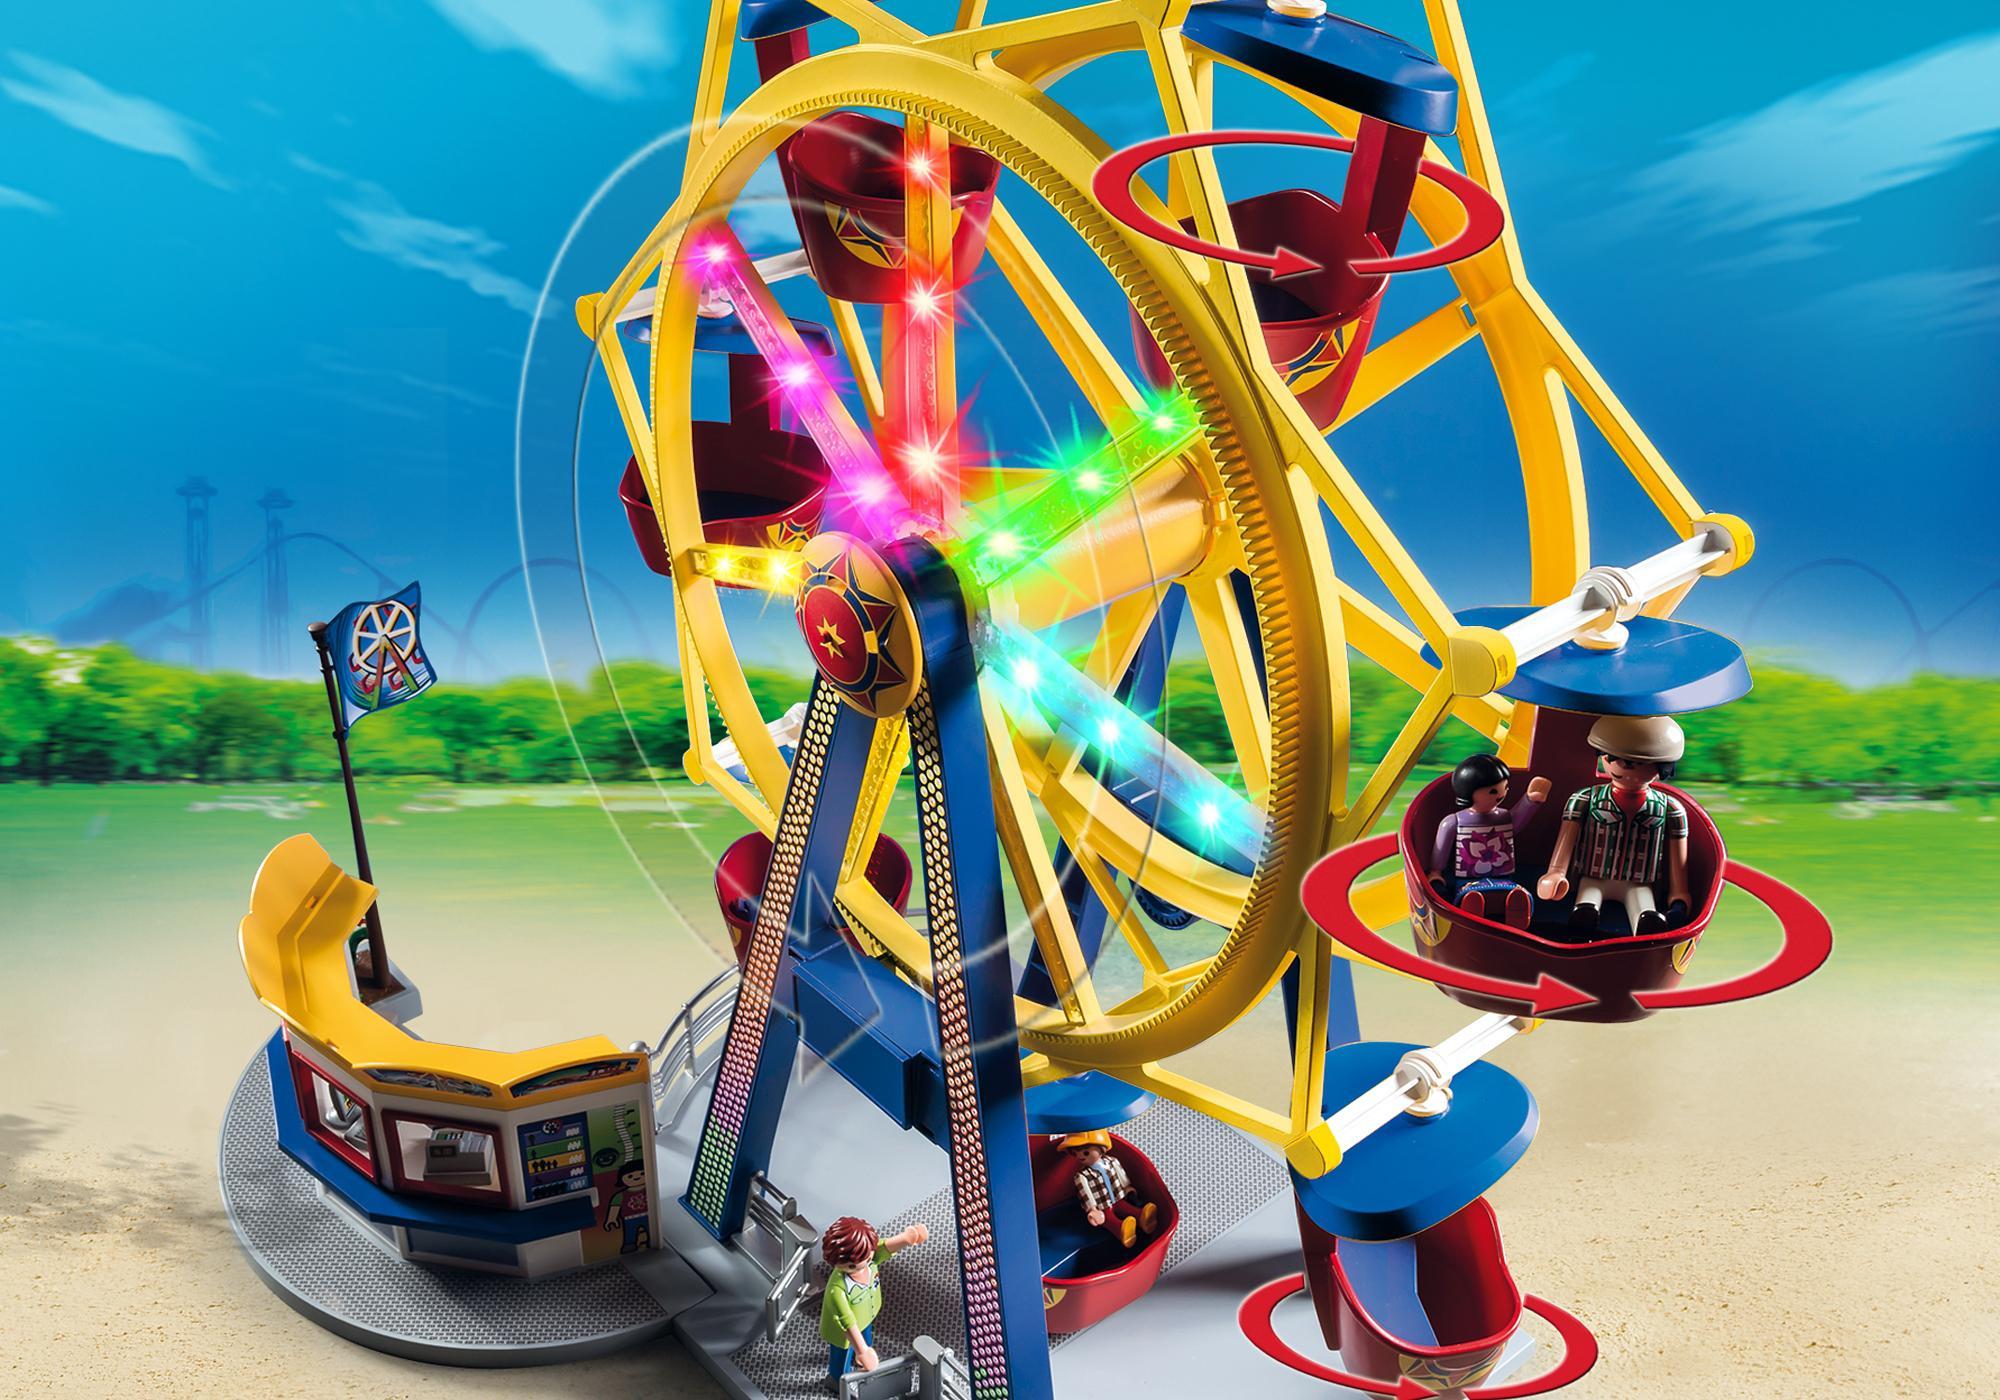 Развлечения купить. Playmobil игровой набор "колесо обозрения с огнями". Playmobil колесо обозрения. Игрушка "колесо обозрения". Игрушечный парк аттракционов.